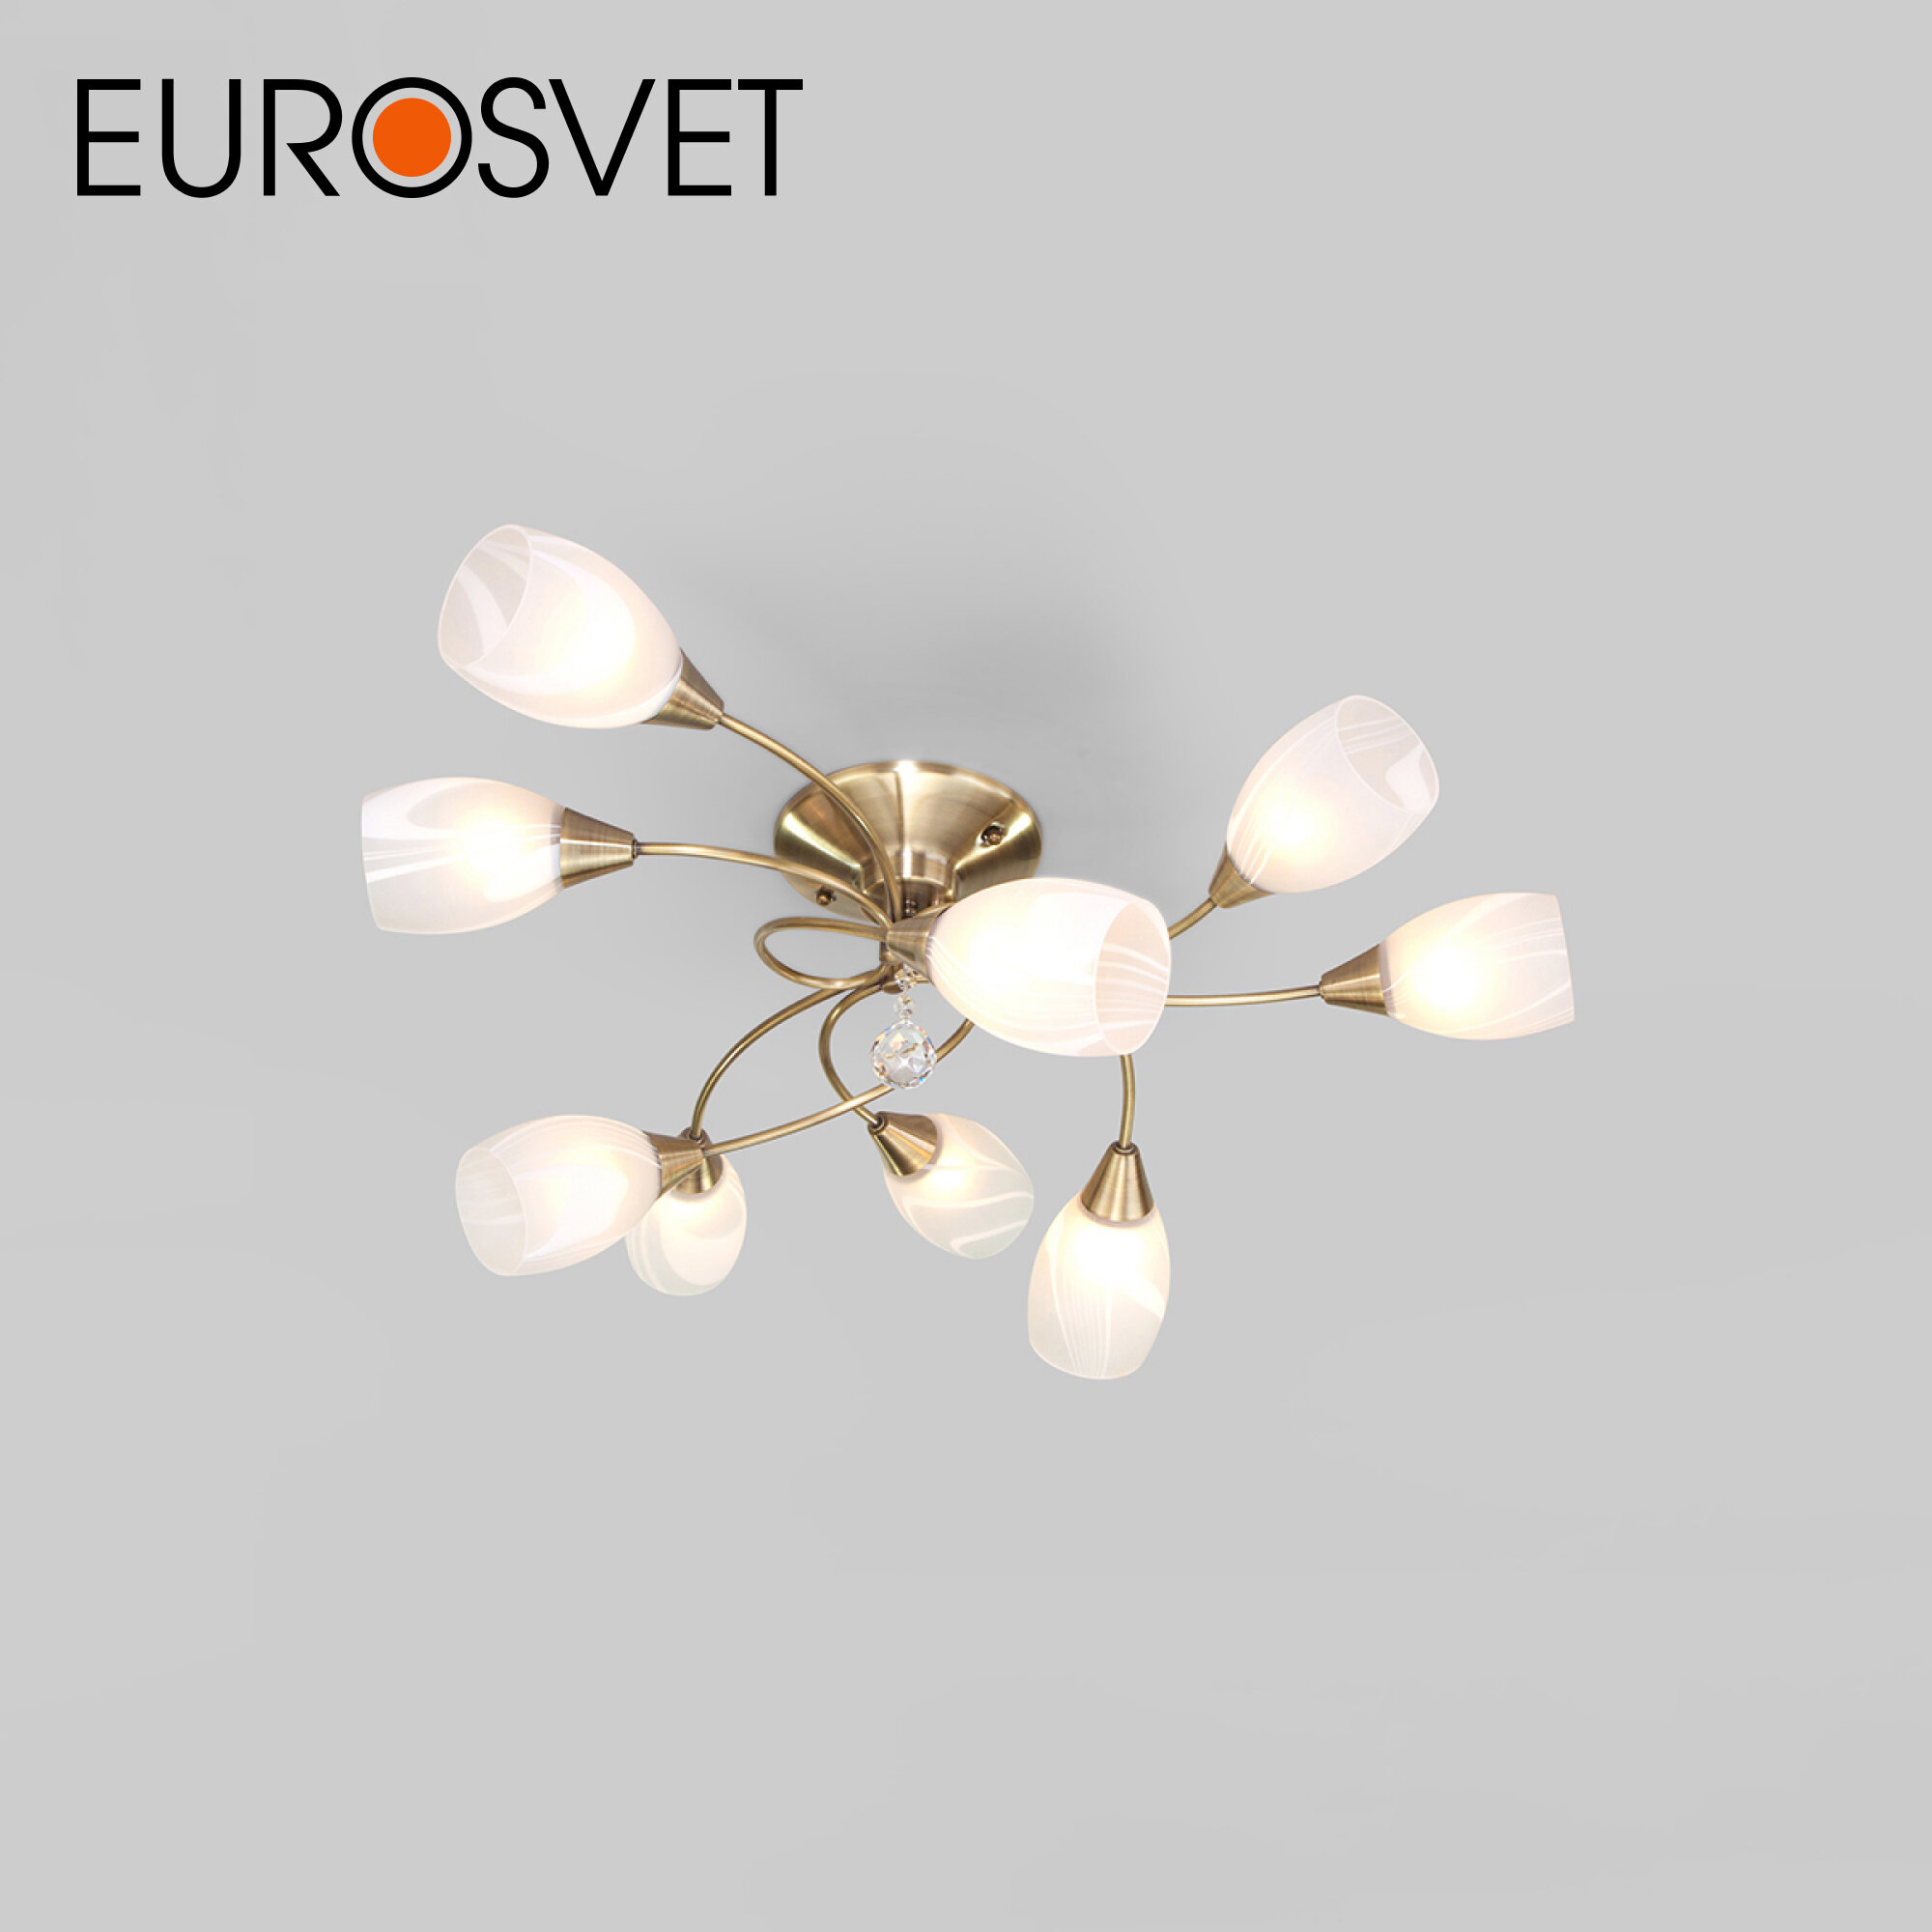 Люстра / Потолочный светильник Eurosvet Virginia с хрустальной подвеской 2275/9 цвет античная бронза